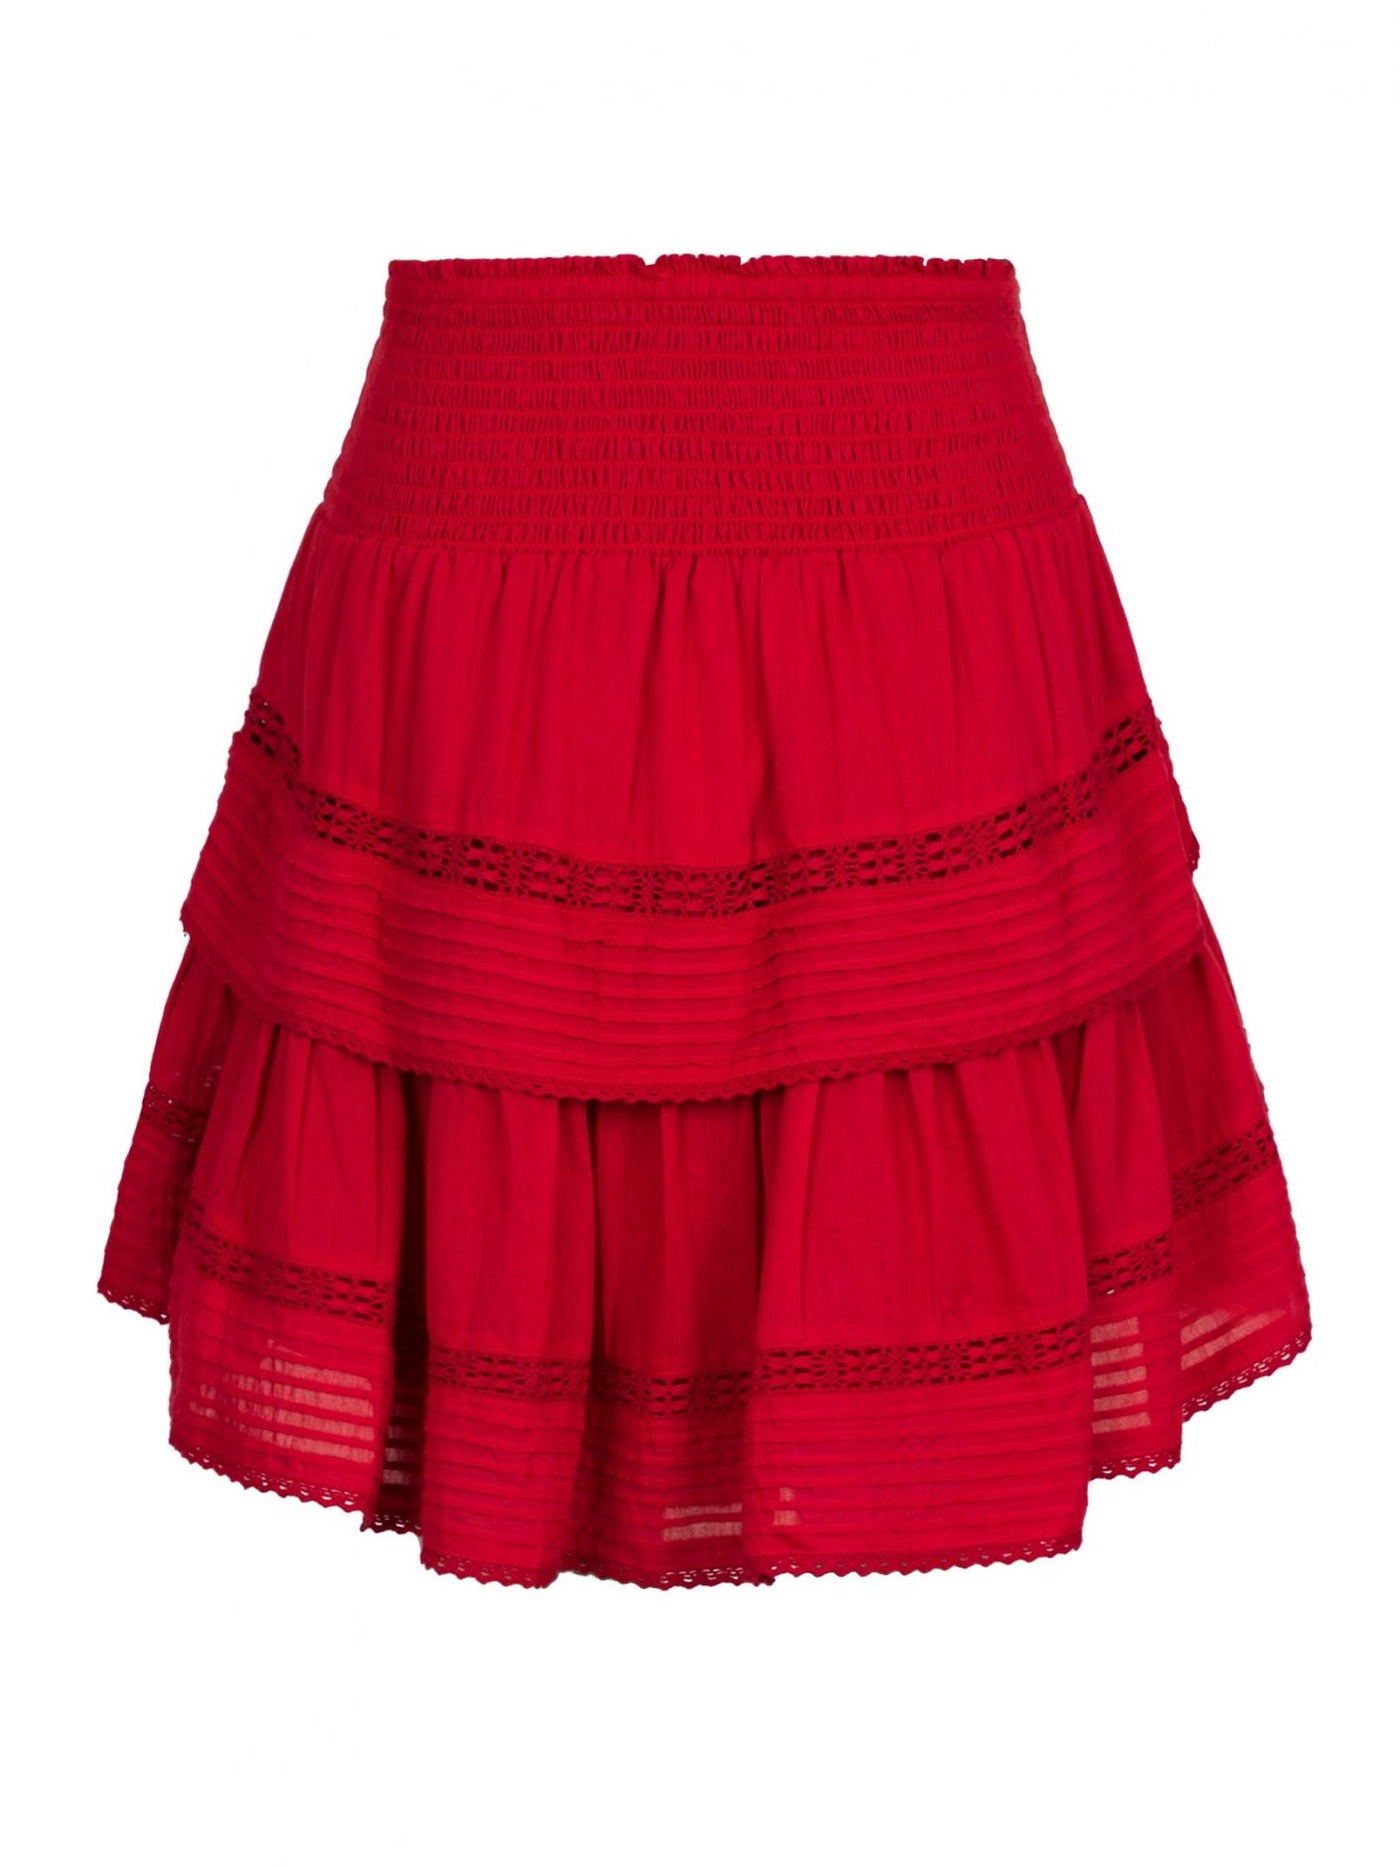 Kenya S Voile Skirt